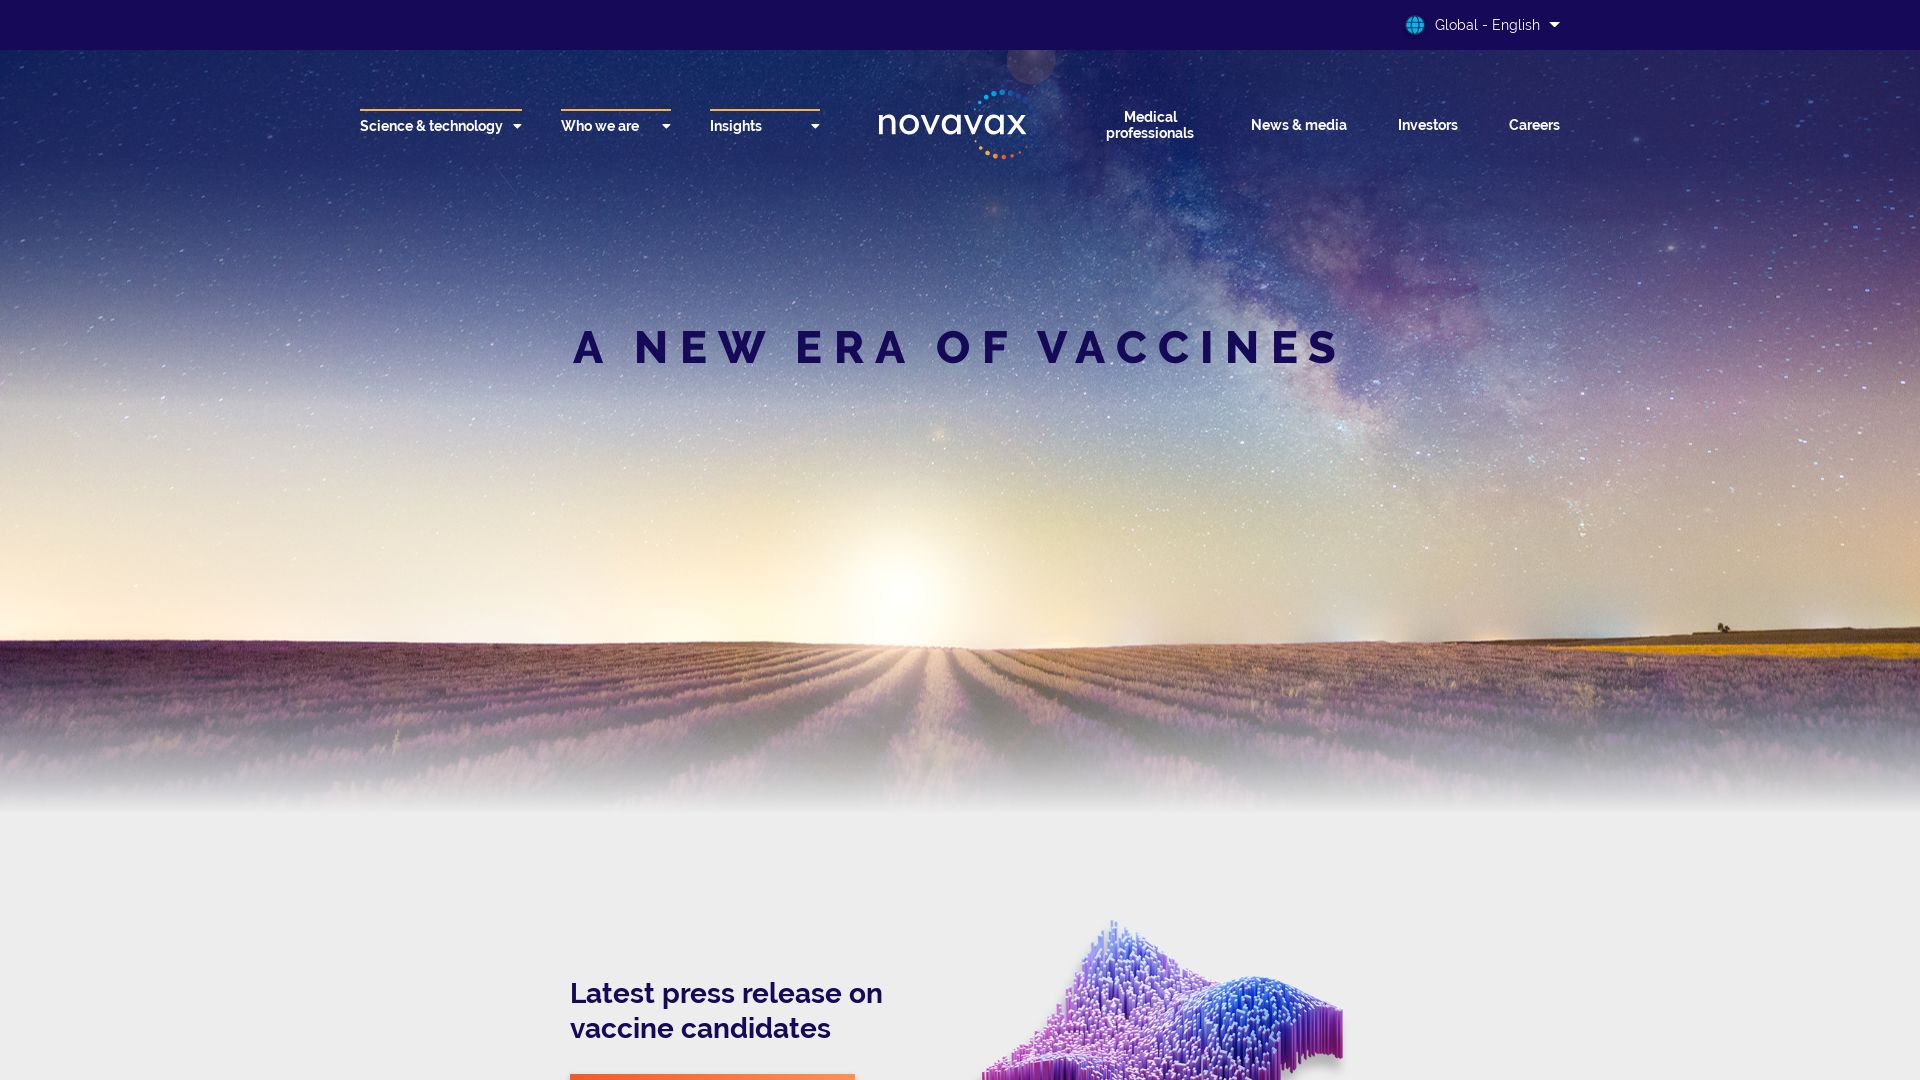 Website status novavax.com is   ONLINE